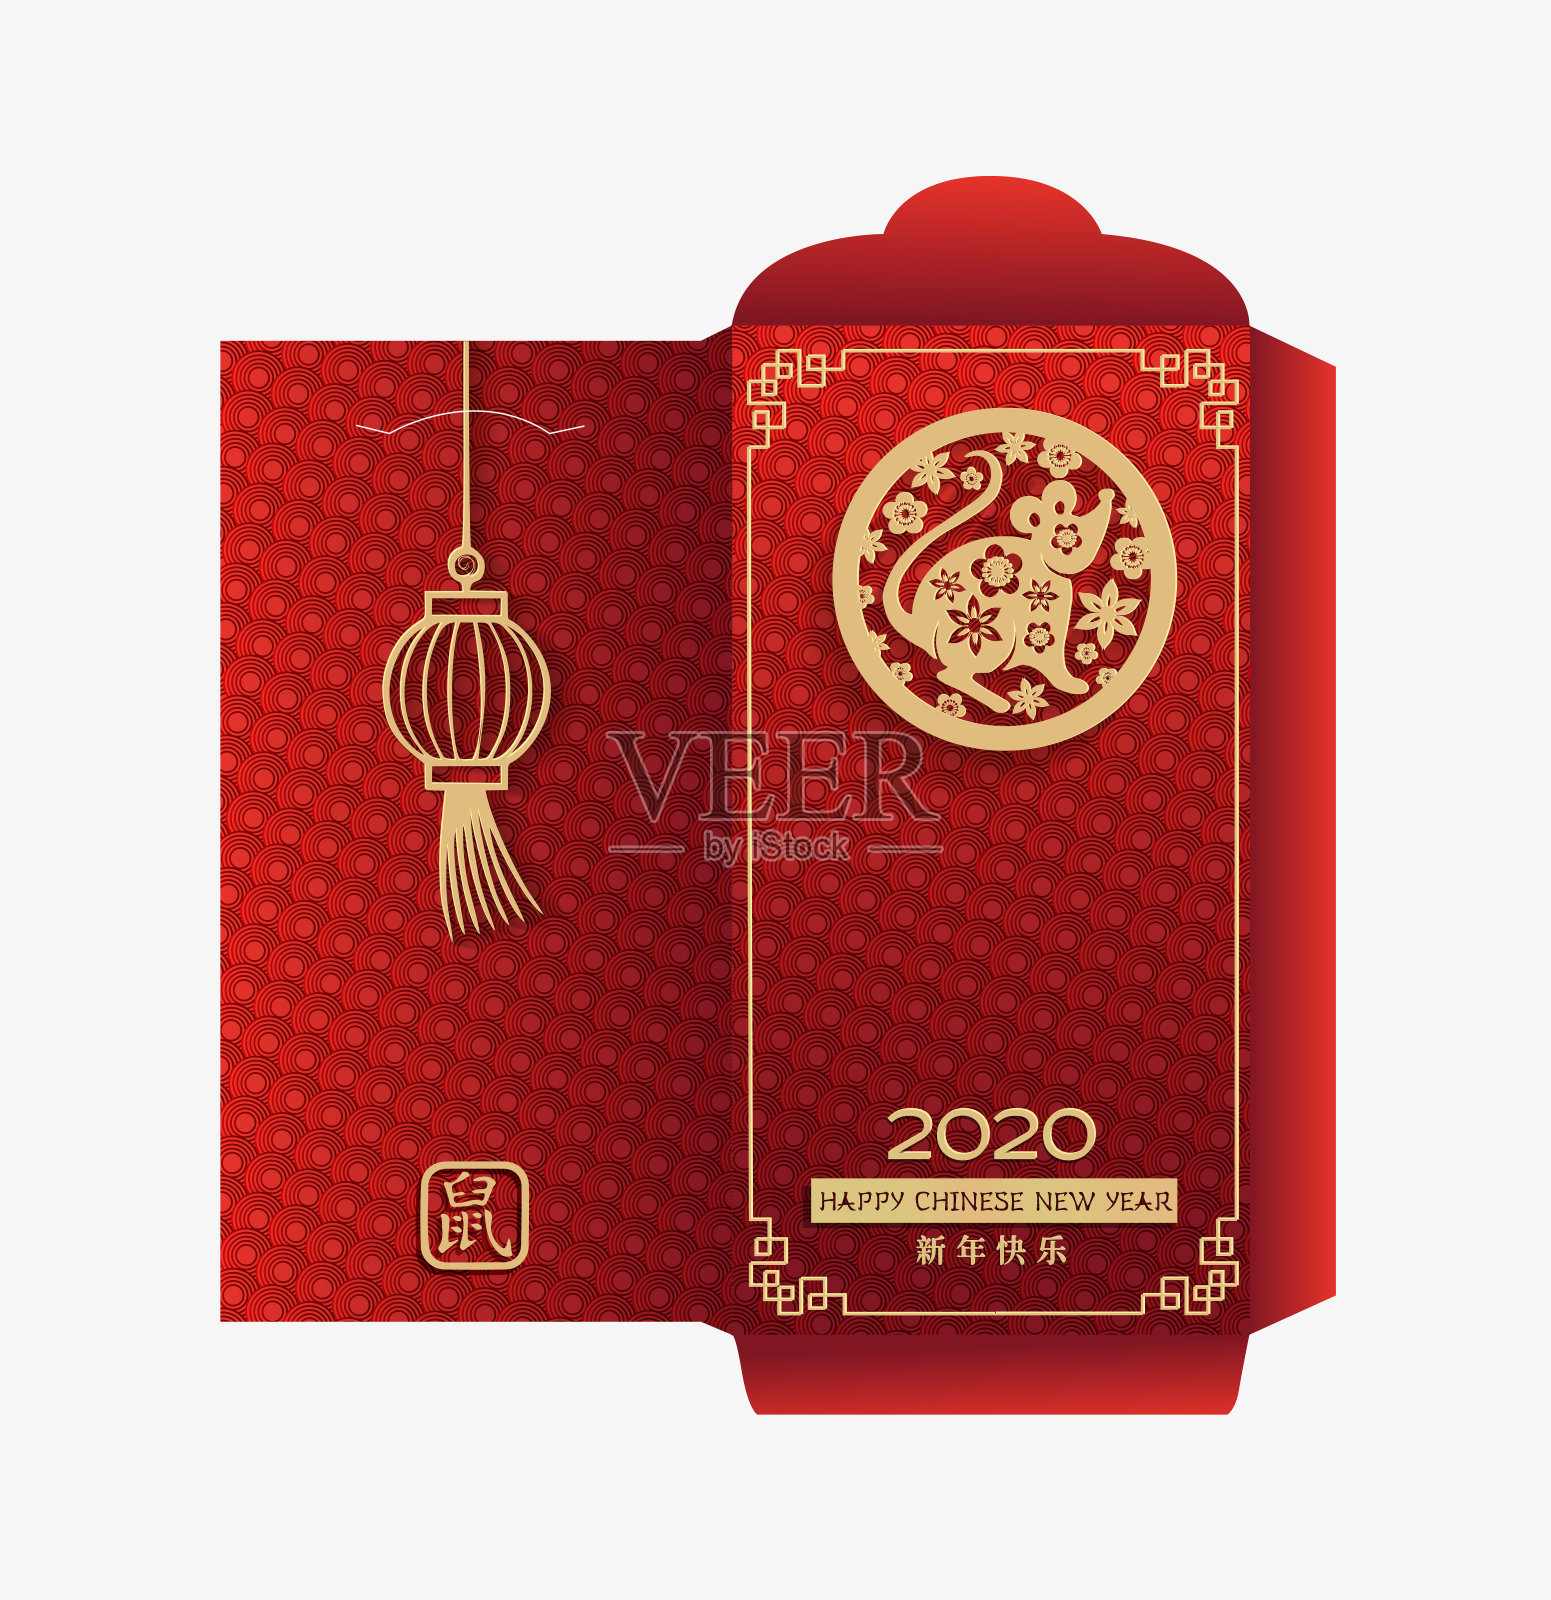 中国2020年的红包。十二生肖老鼠在圆圈标志与金纸剪纸艺术在红色的背景与灯笼。新年快乐，老鼠插画图片素材